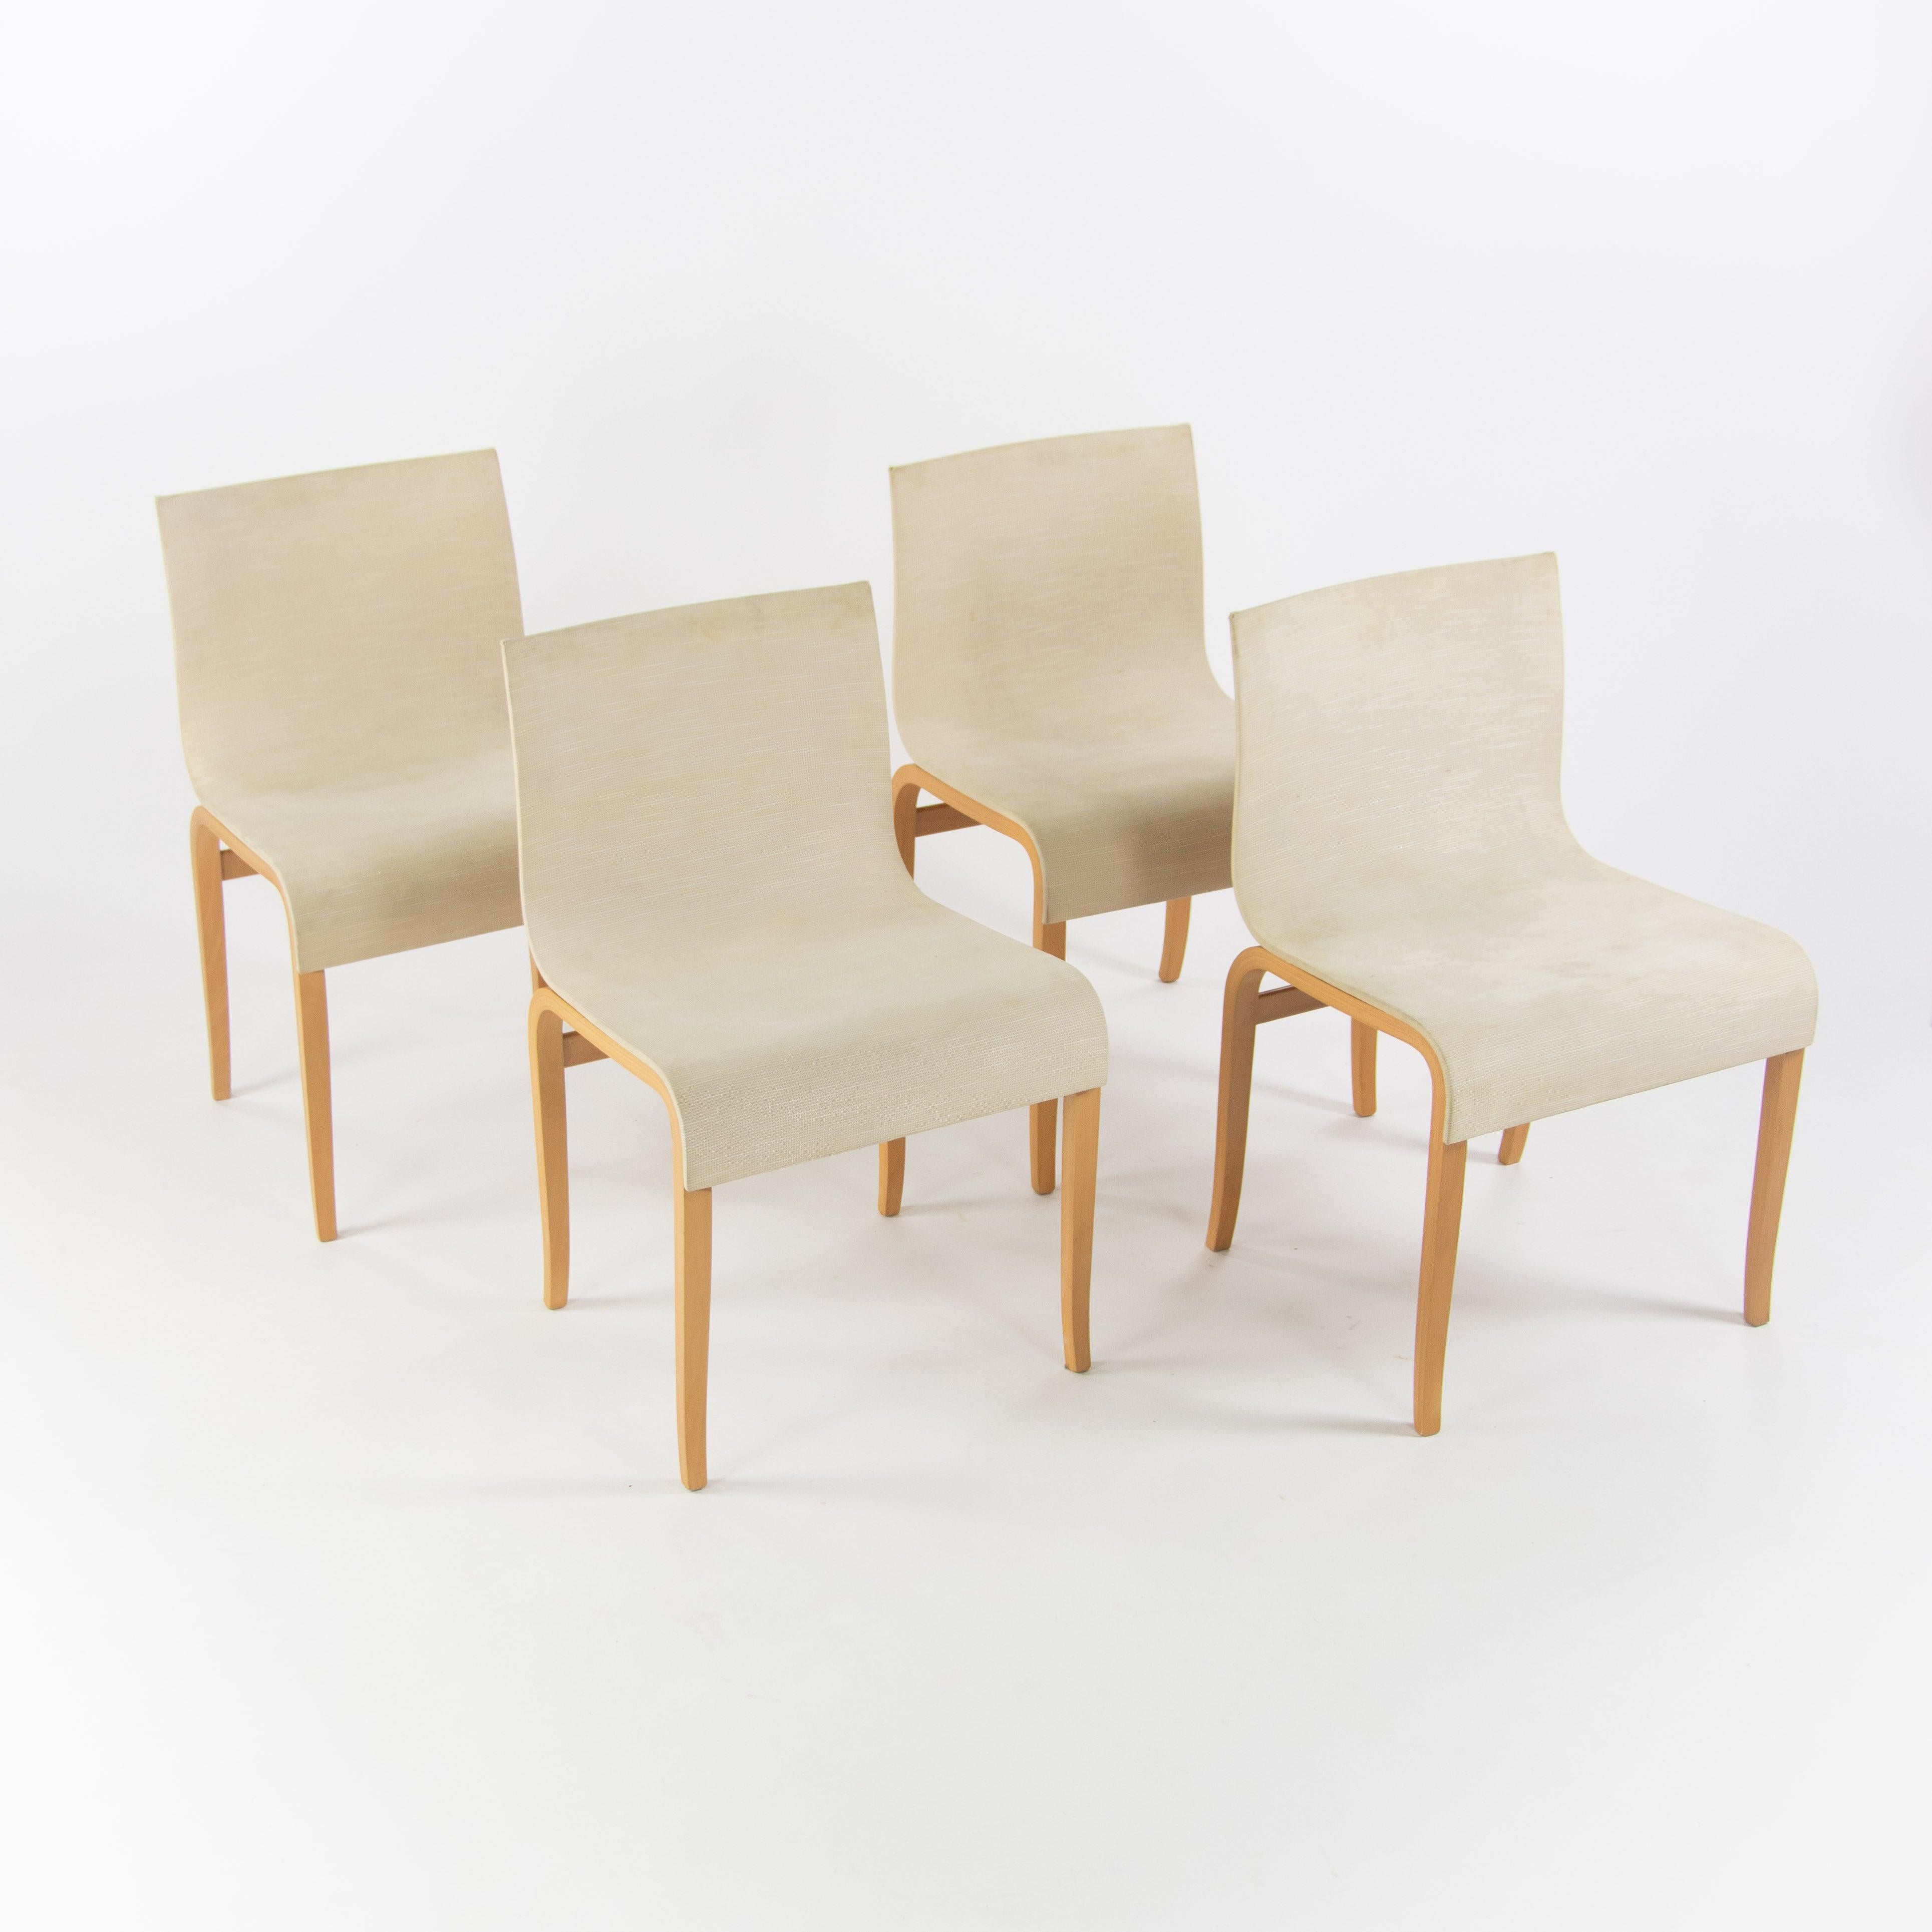 Nous proposons à la vente un ensemble de quatre magnifiques chaises de salle à manger en contreplaqué cintré Gina / Ginotta avec un revêtement en tissu couleur avoine, produites par Crassevig, distribuées par Knoll aux États-Unis, et conçues par